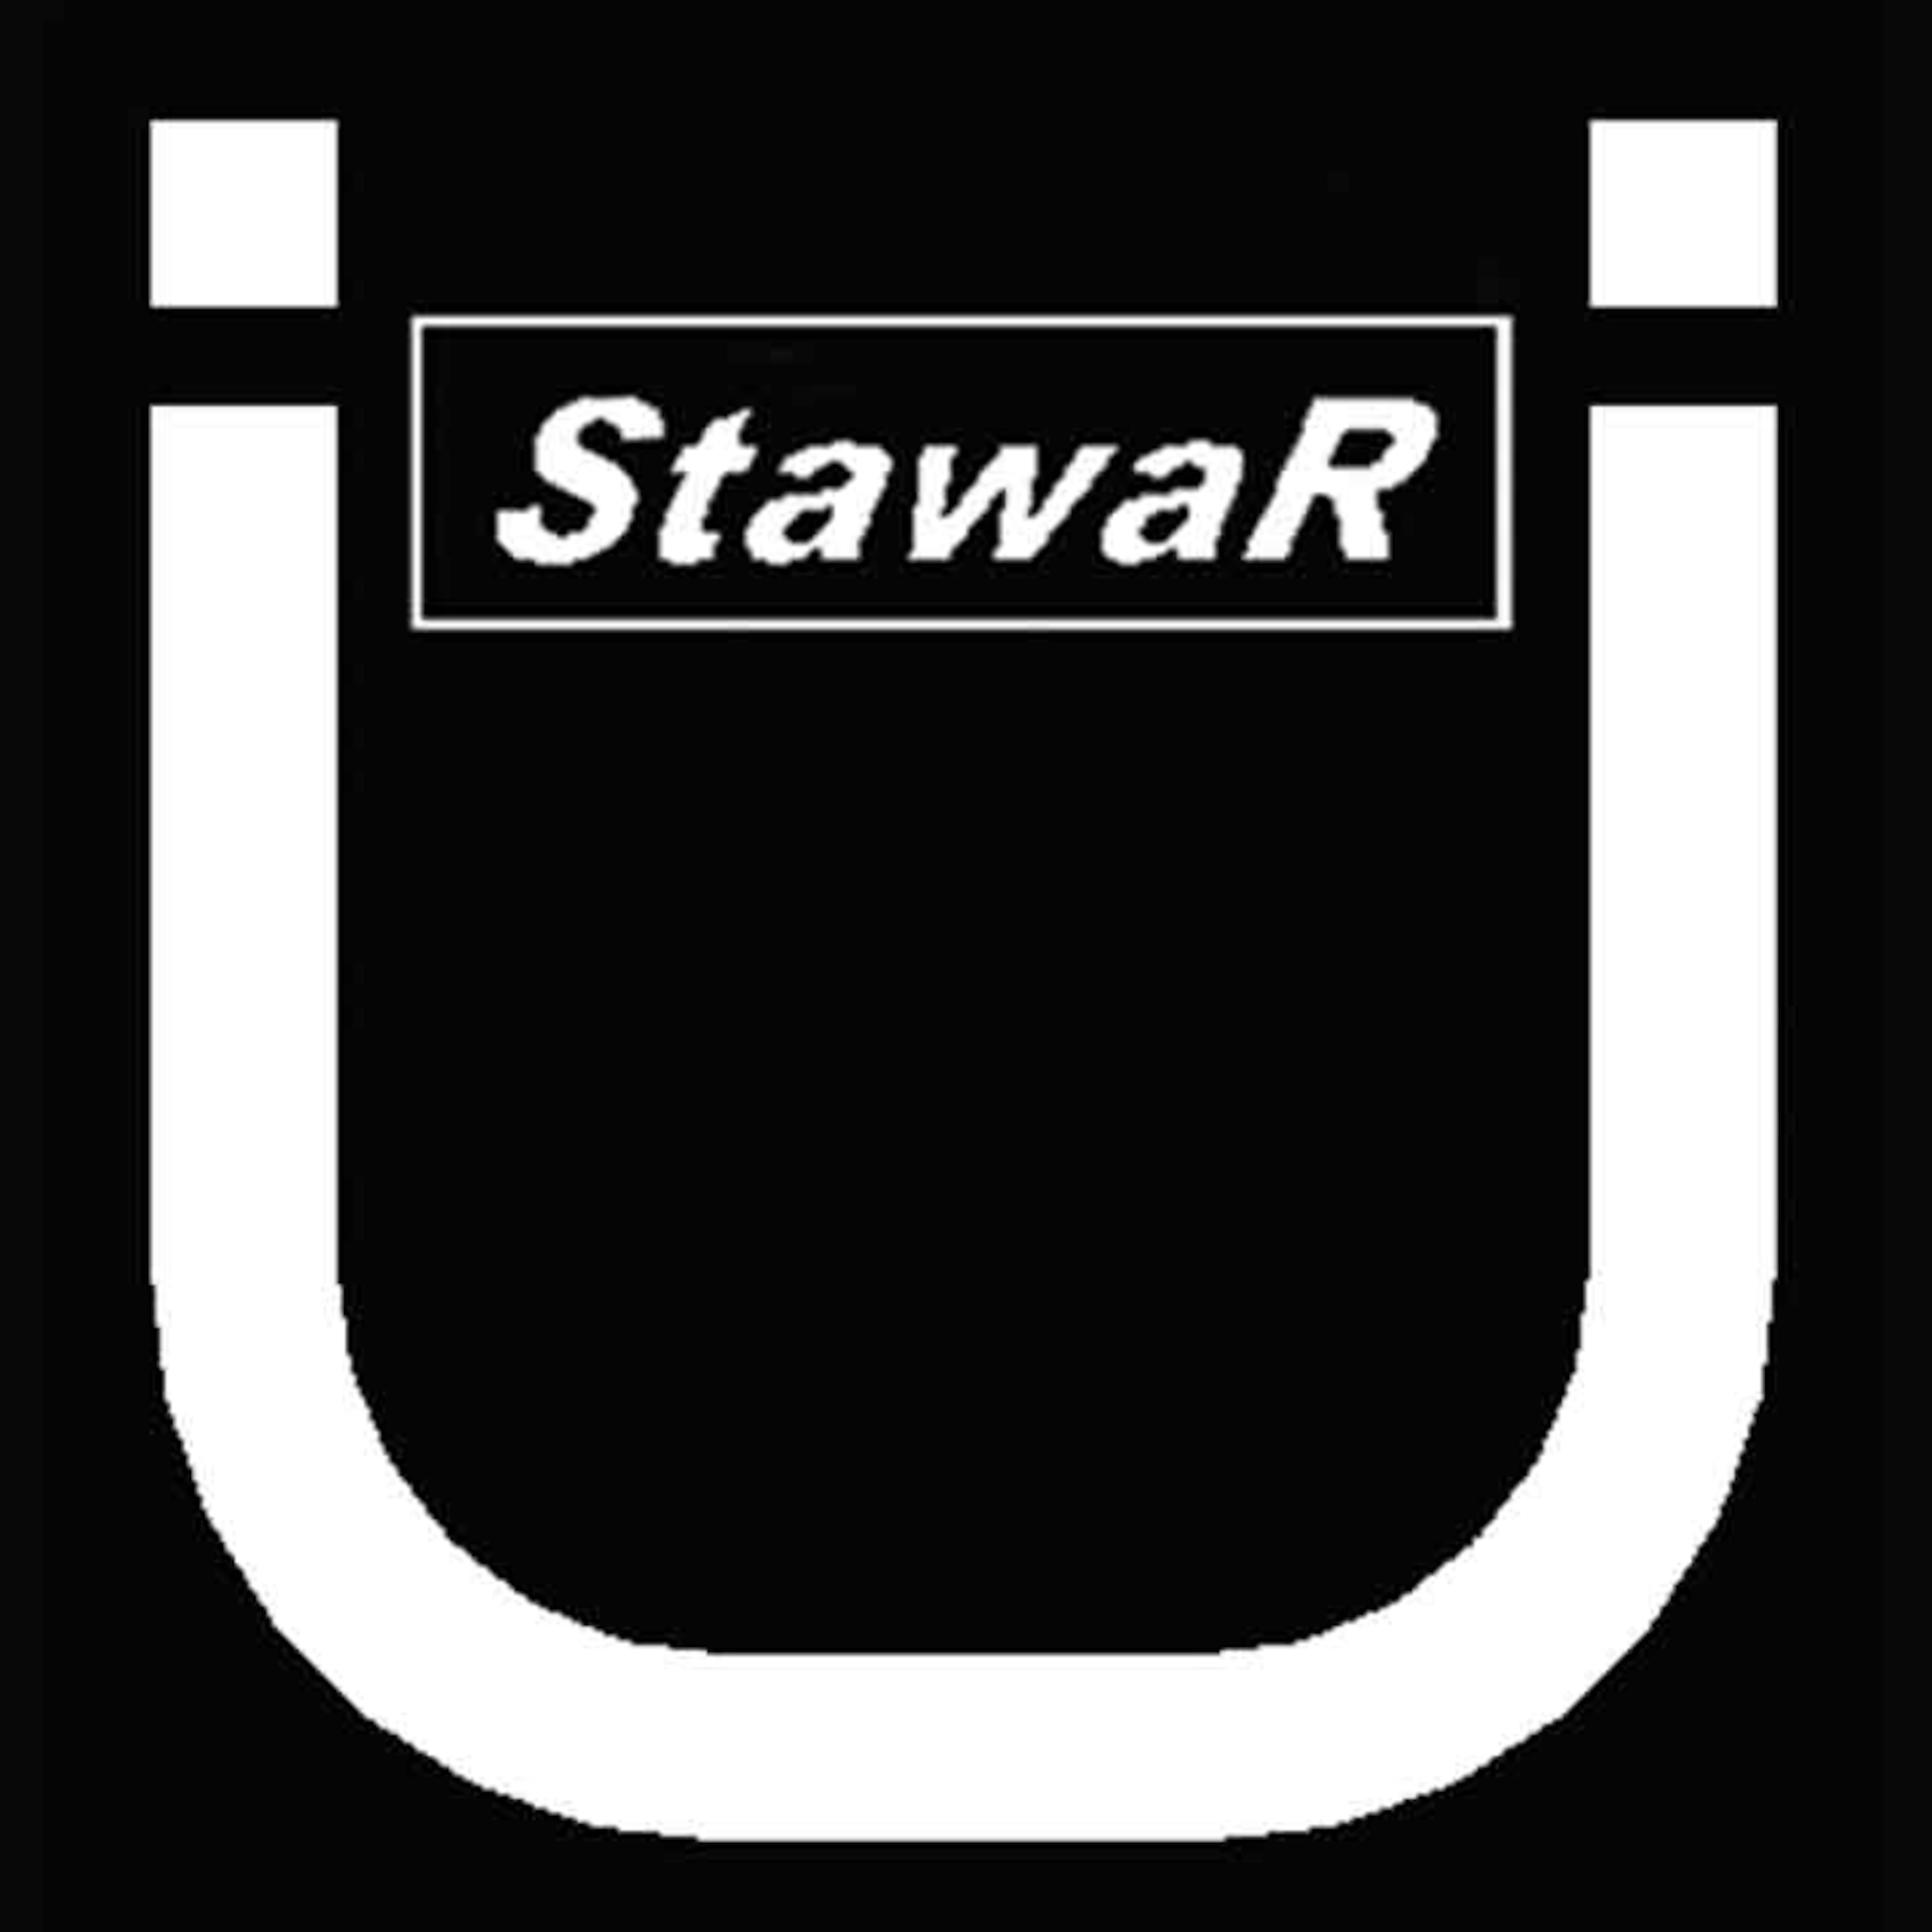 STAWAR